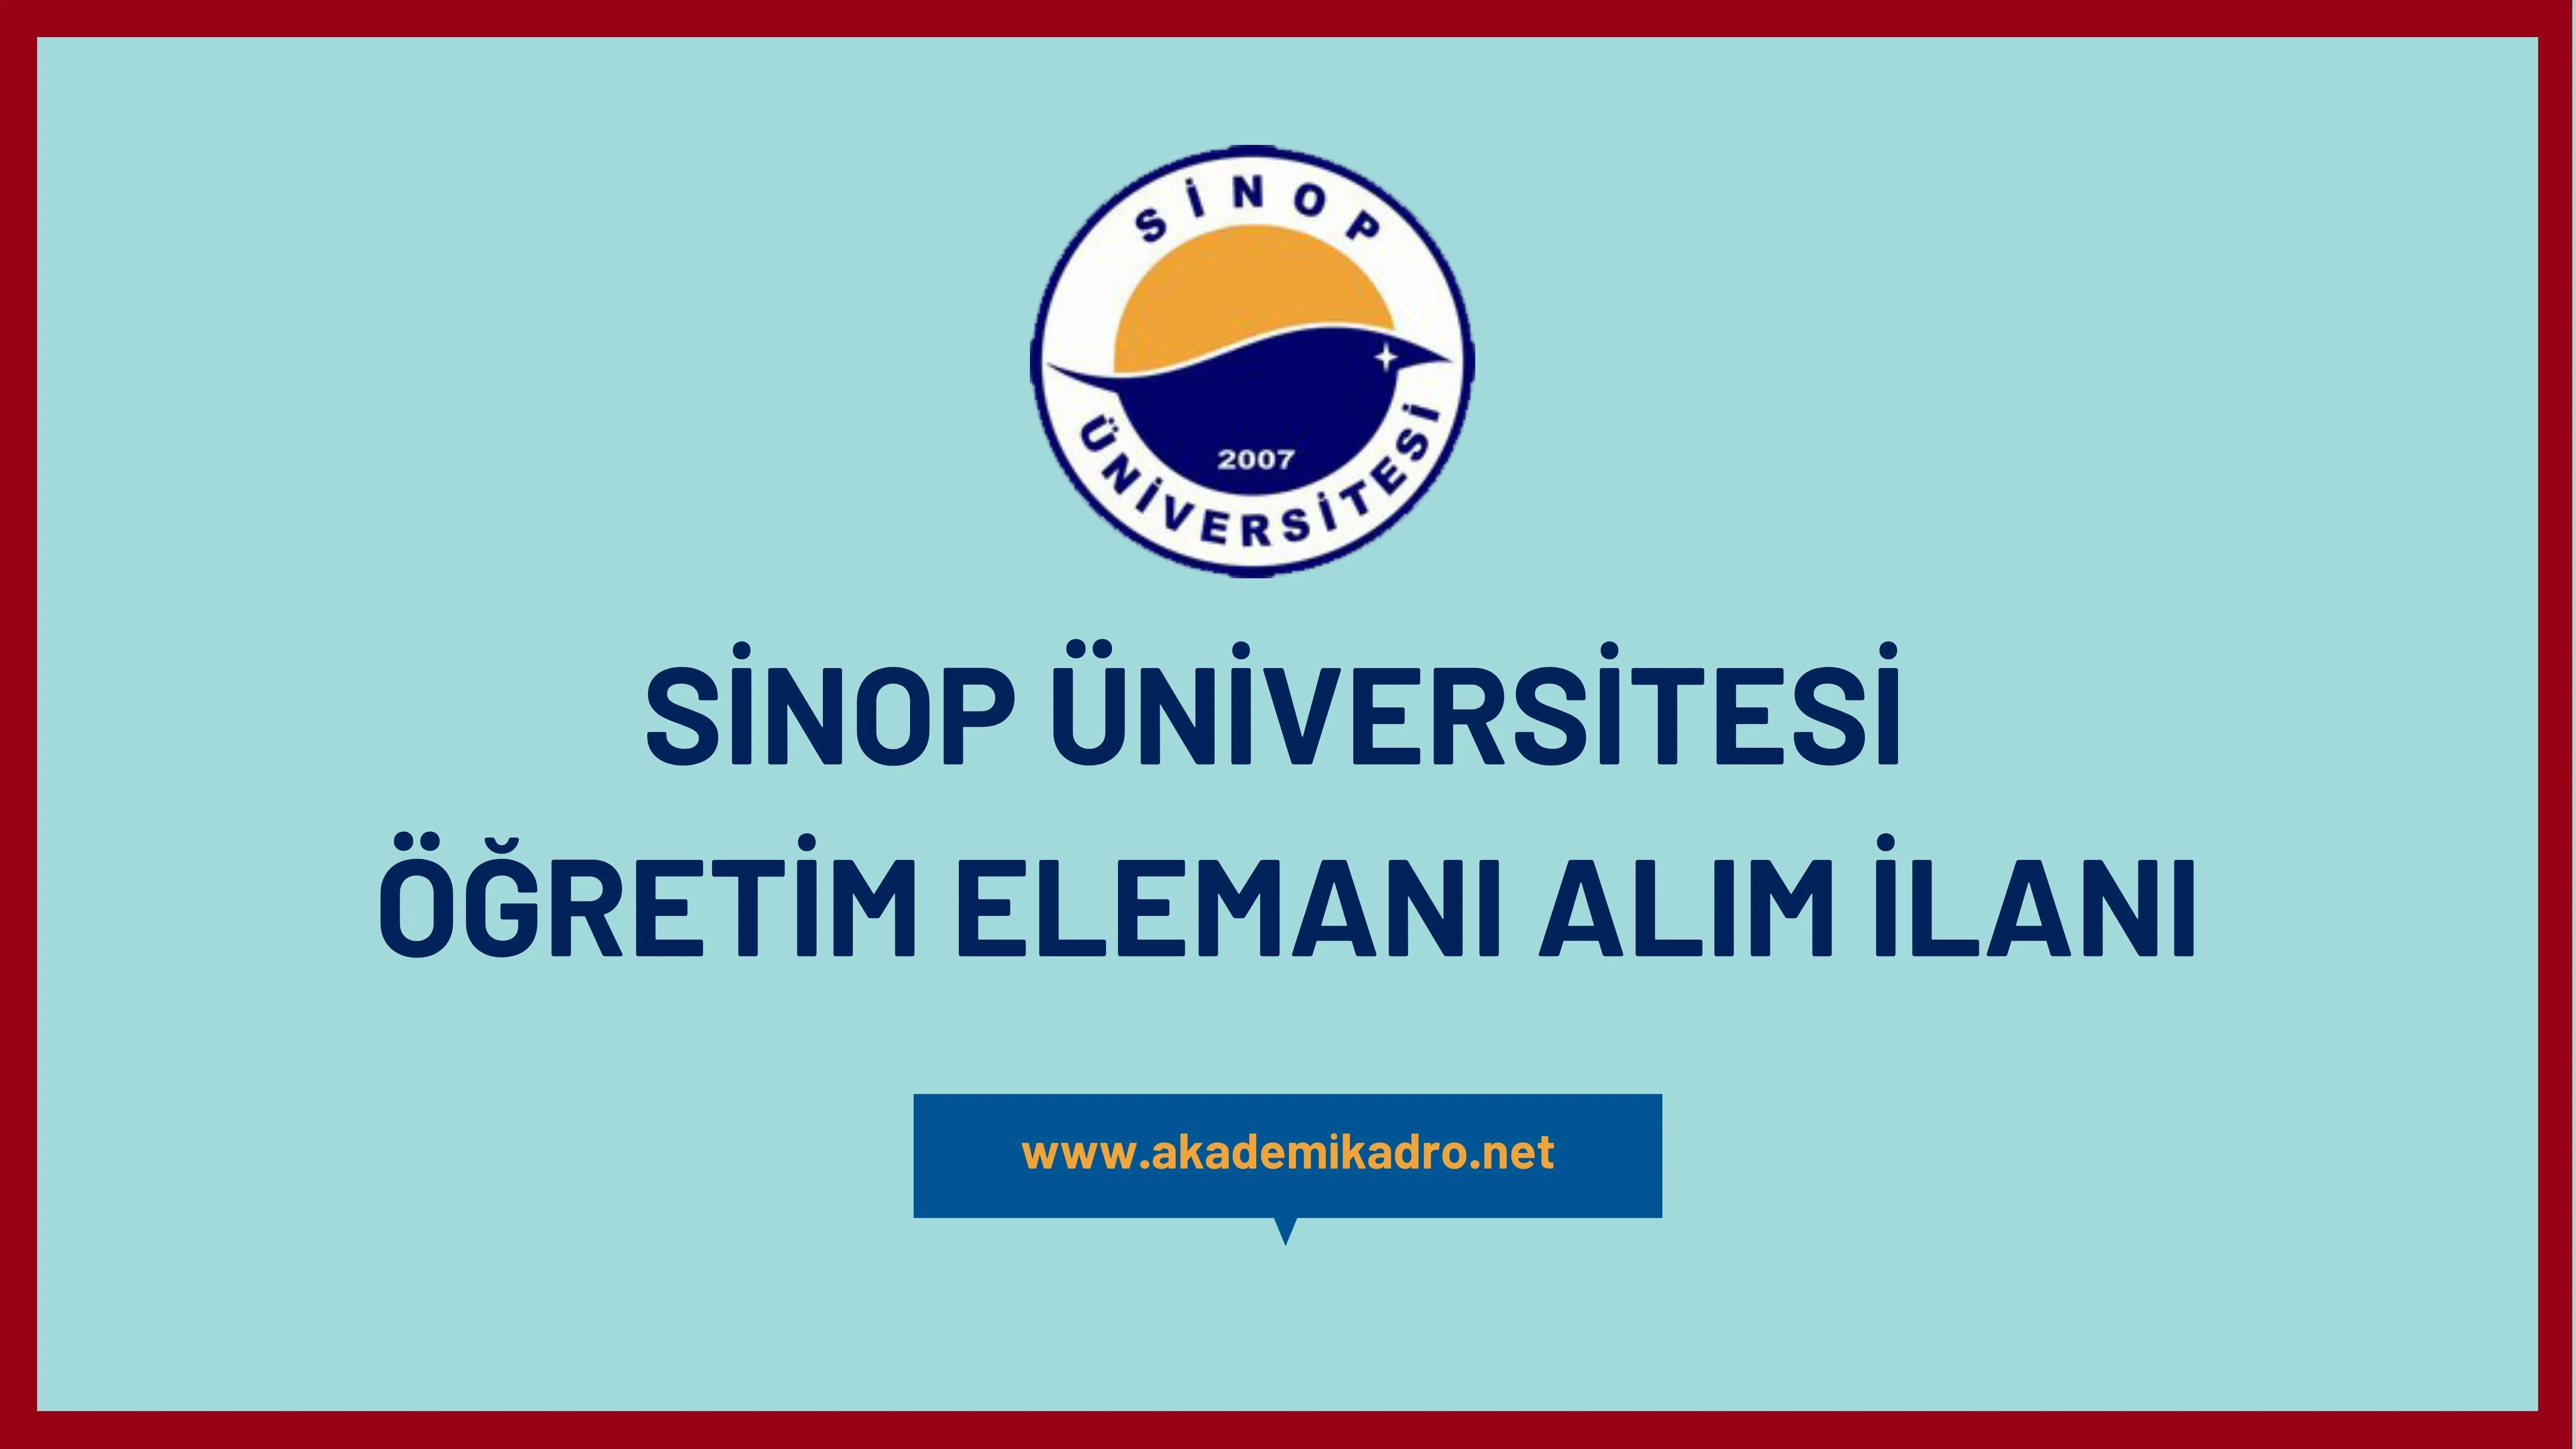 Sinop Üniversitesi 3 Araştırma görevlisi, 4 Öğretim görevlisi ve birçok alandan 28 Öğretim üyesi olmak üzere 35 Öğretim elemanı alacak.